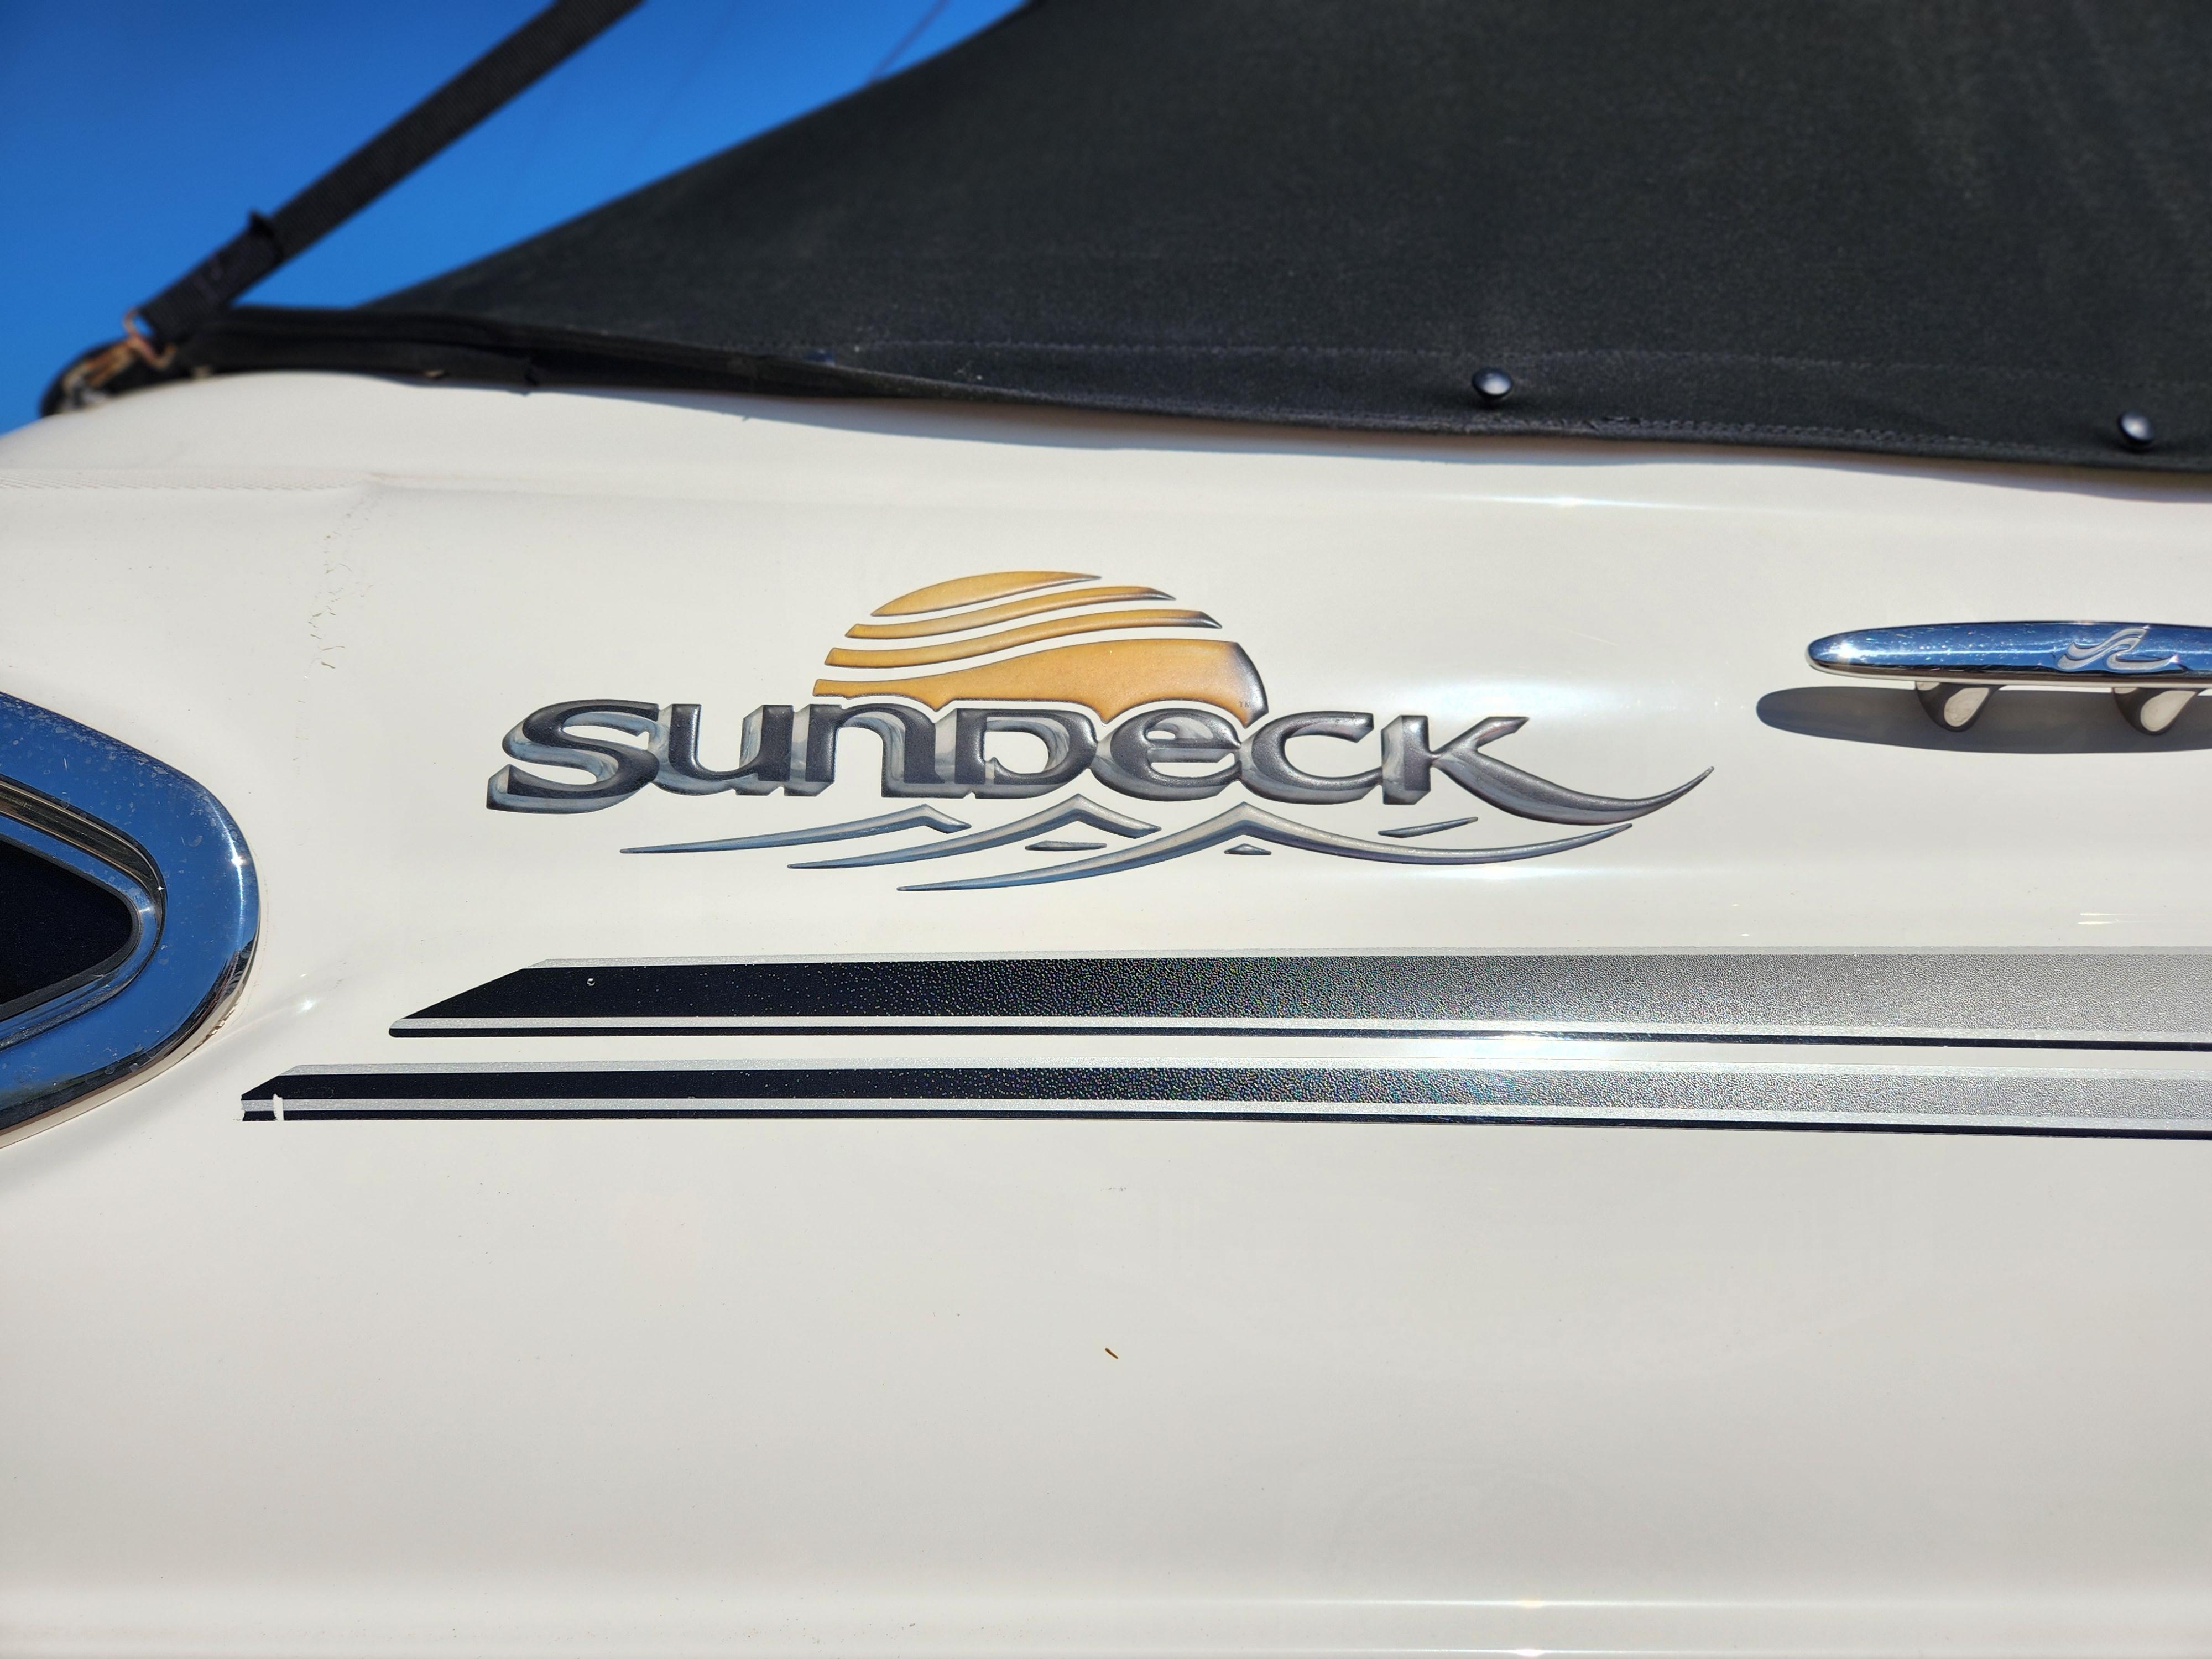 2007 Sea Ray 240 Sundeck